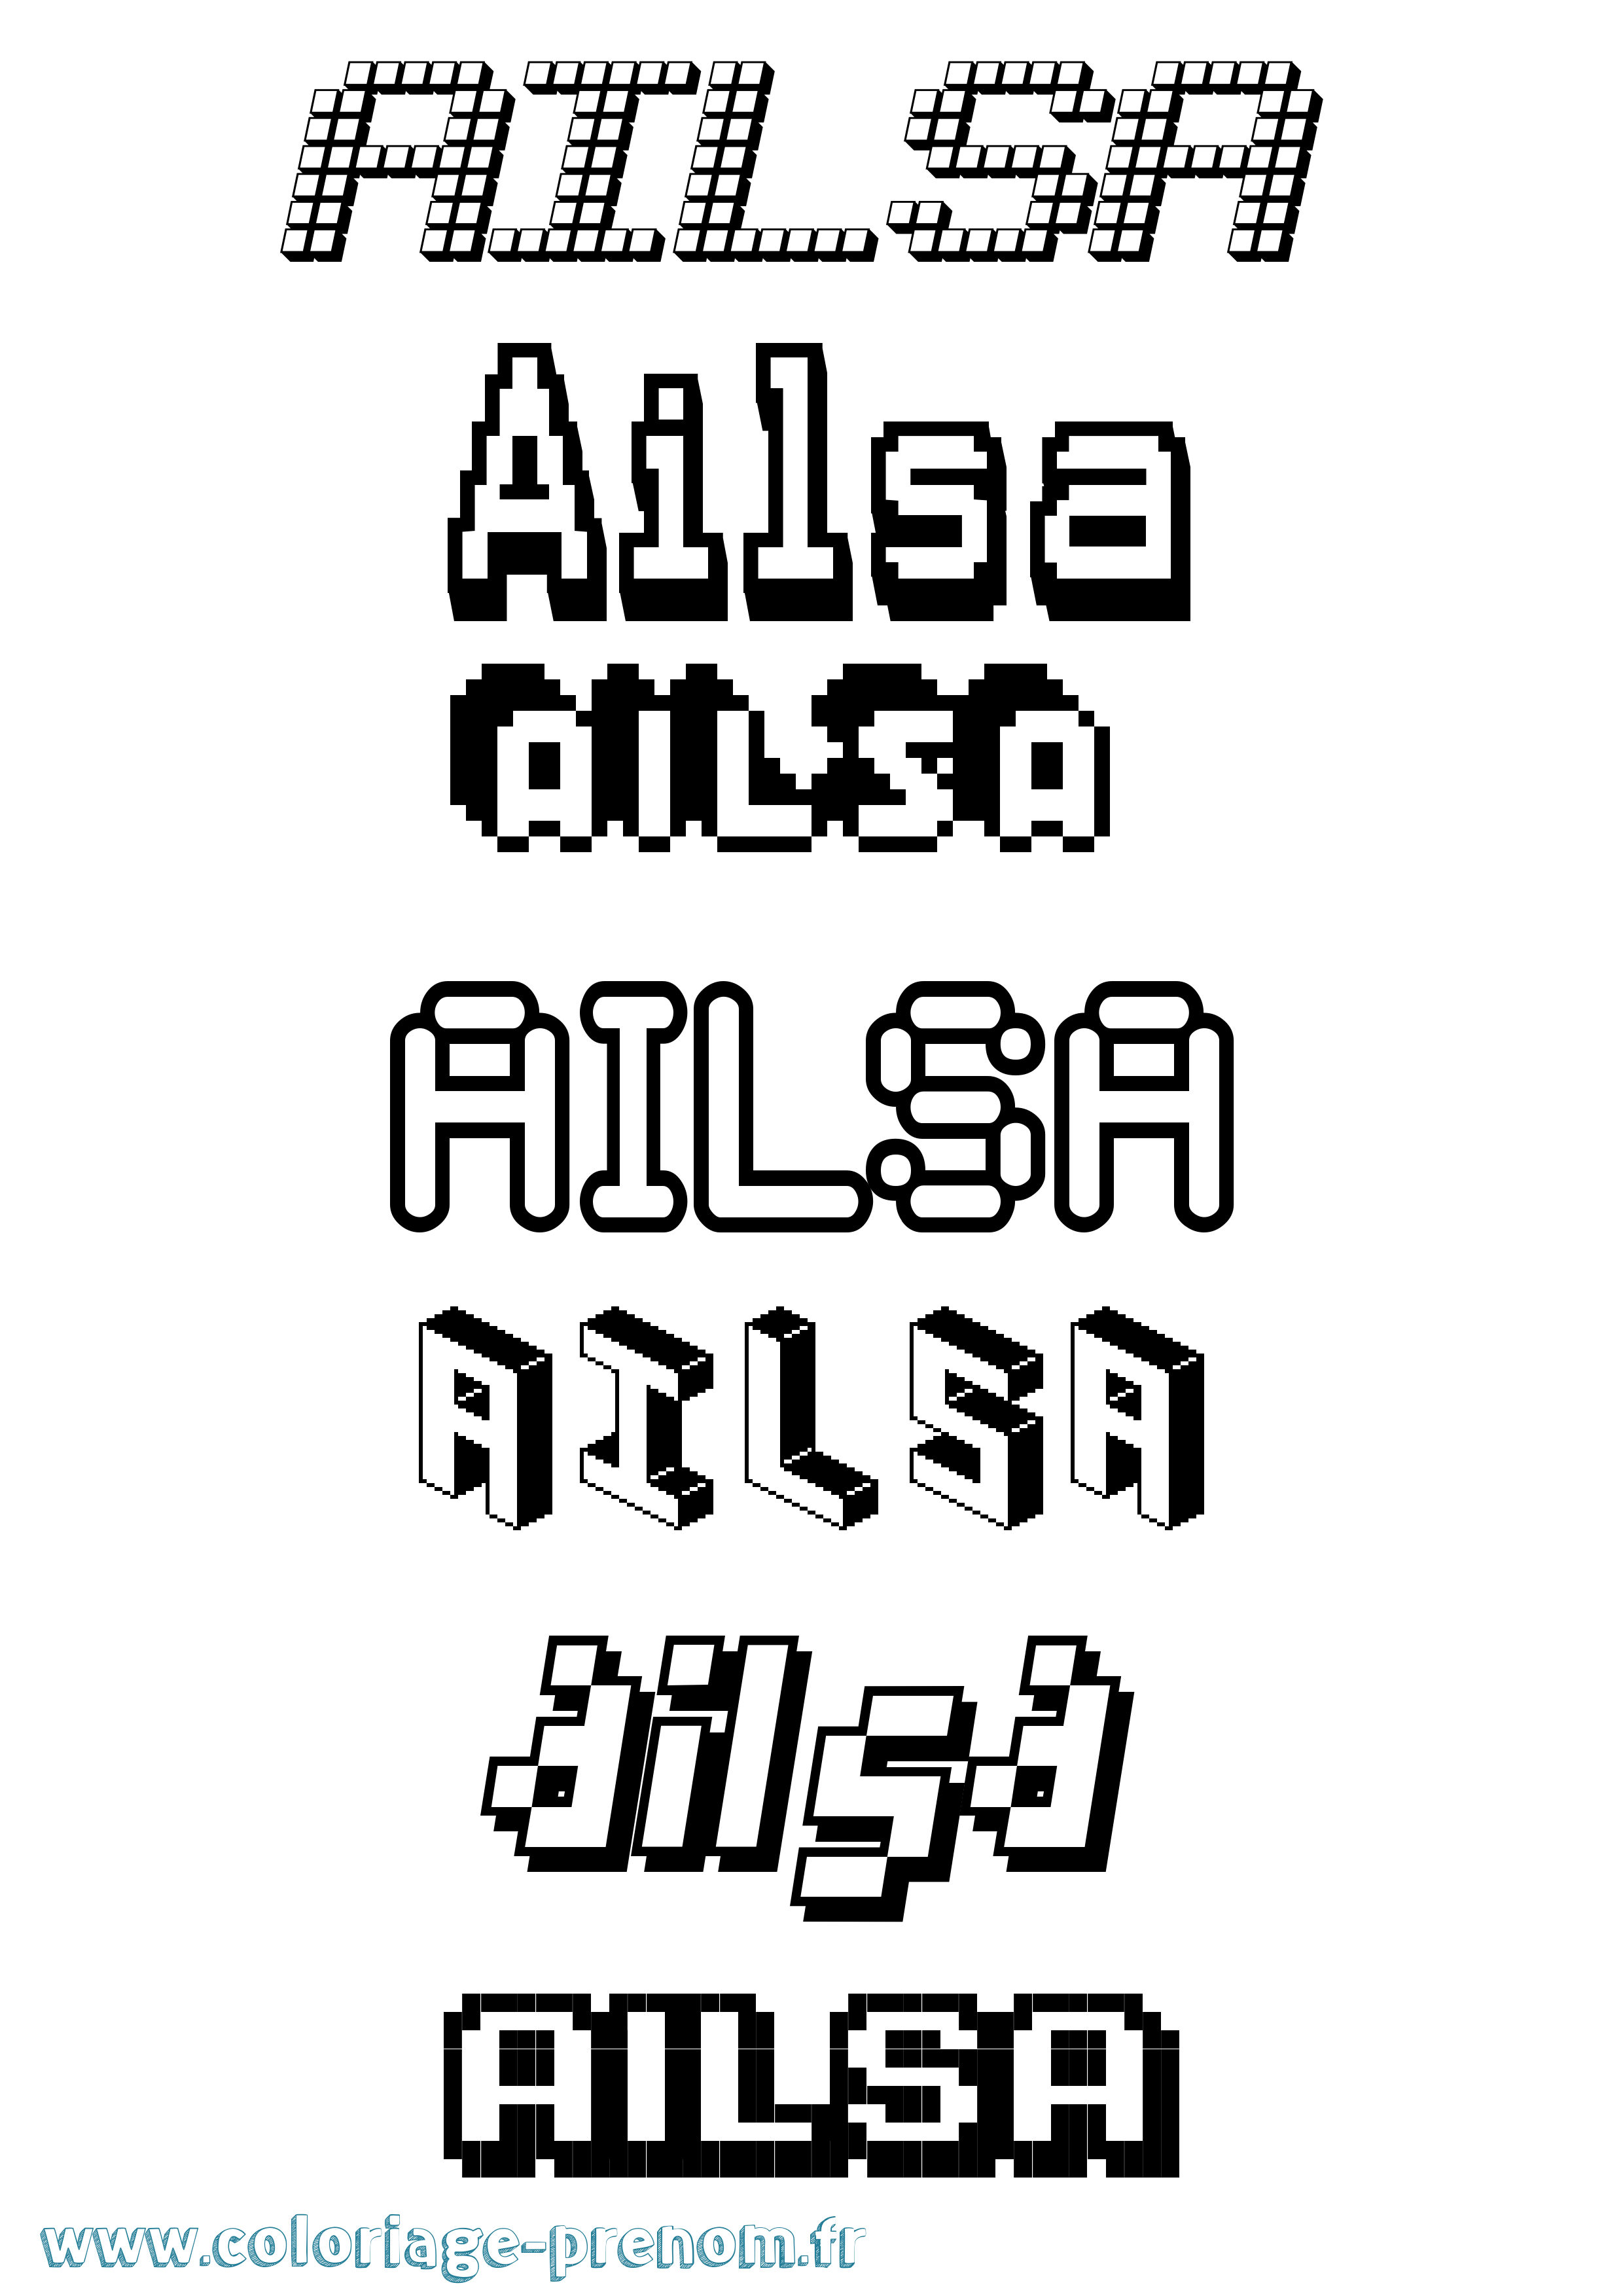 Coloriage prénom Ailsa Pixel